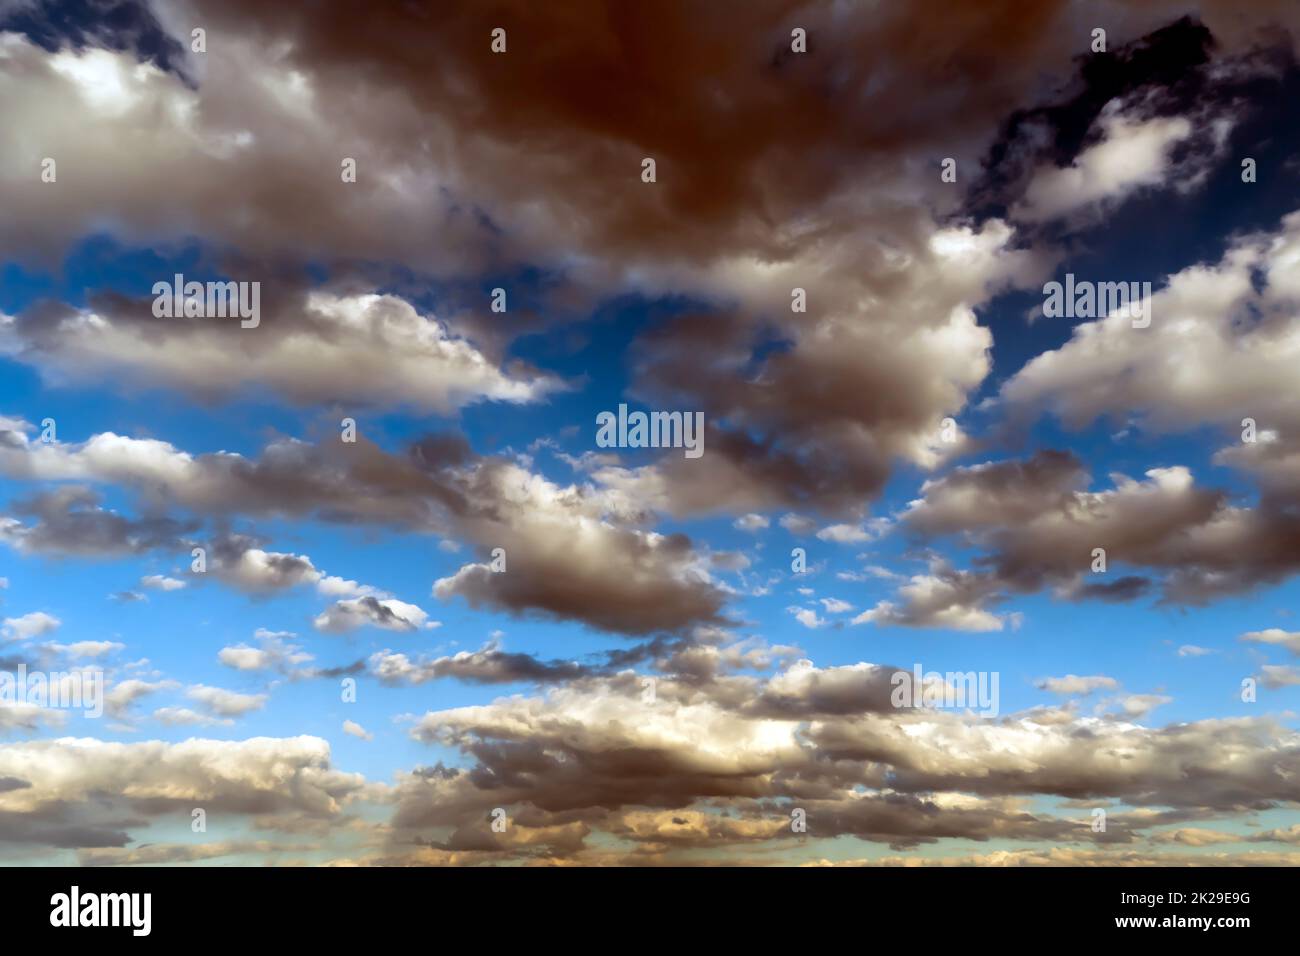 Panoramablick auf den blauen Himmel mit Wolken in Bewegung. Blick auf den blauen Himmel mit Wolken in Bewegung. Schönes Wetter mit klarem Himmel. Himmlisches Licht. Dramatischer Himmel mit Wolken Stockfoto